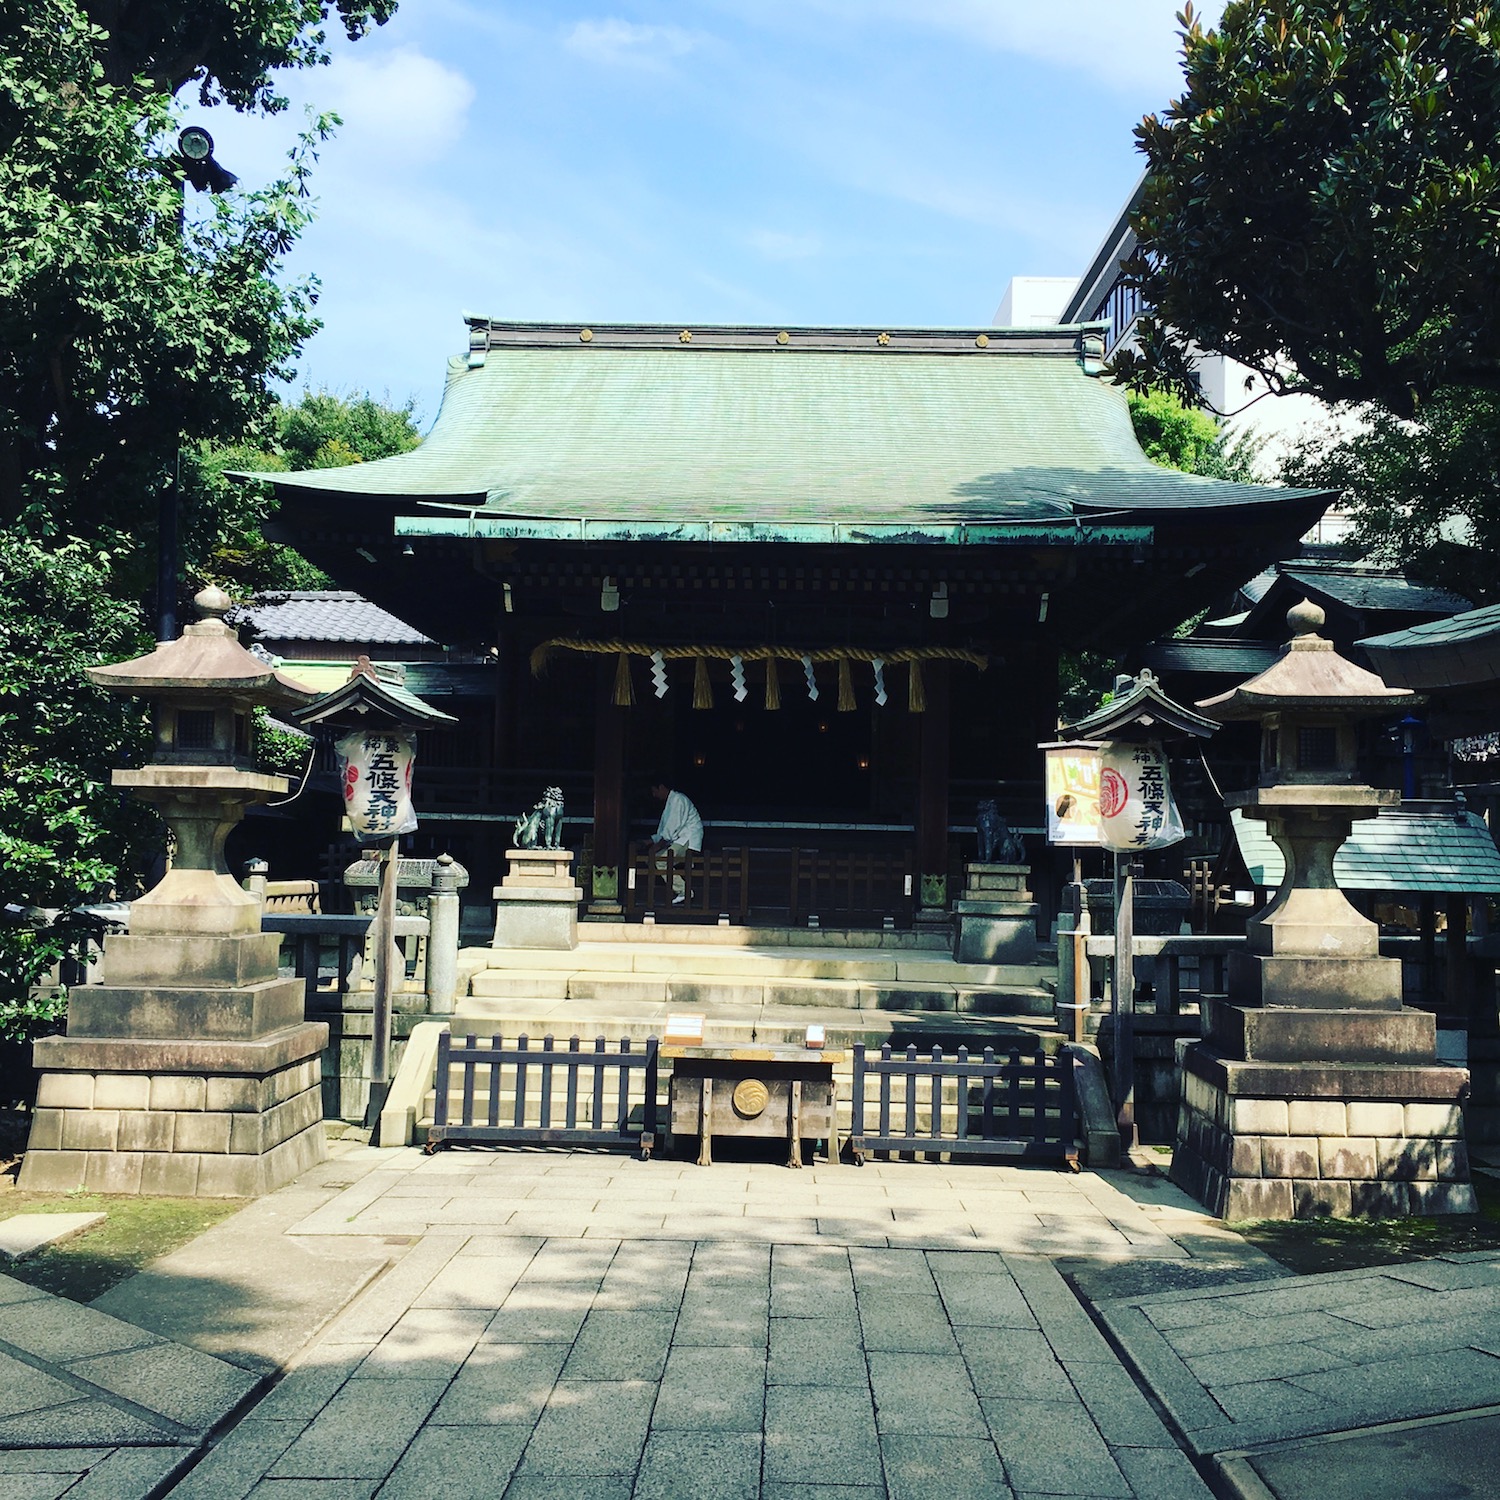 東京最古の神社とも言われる上野の五條天神社。